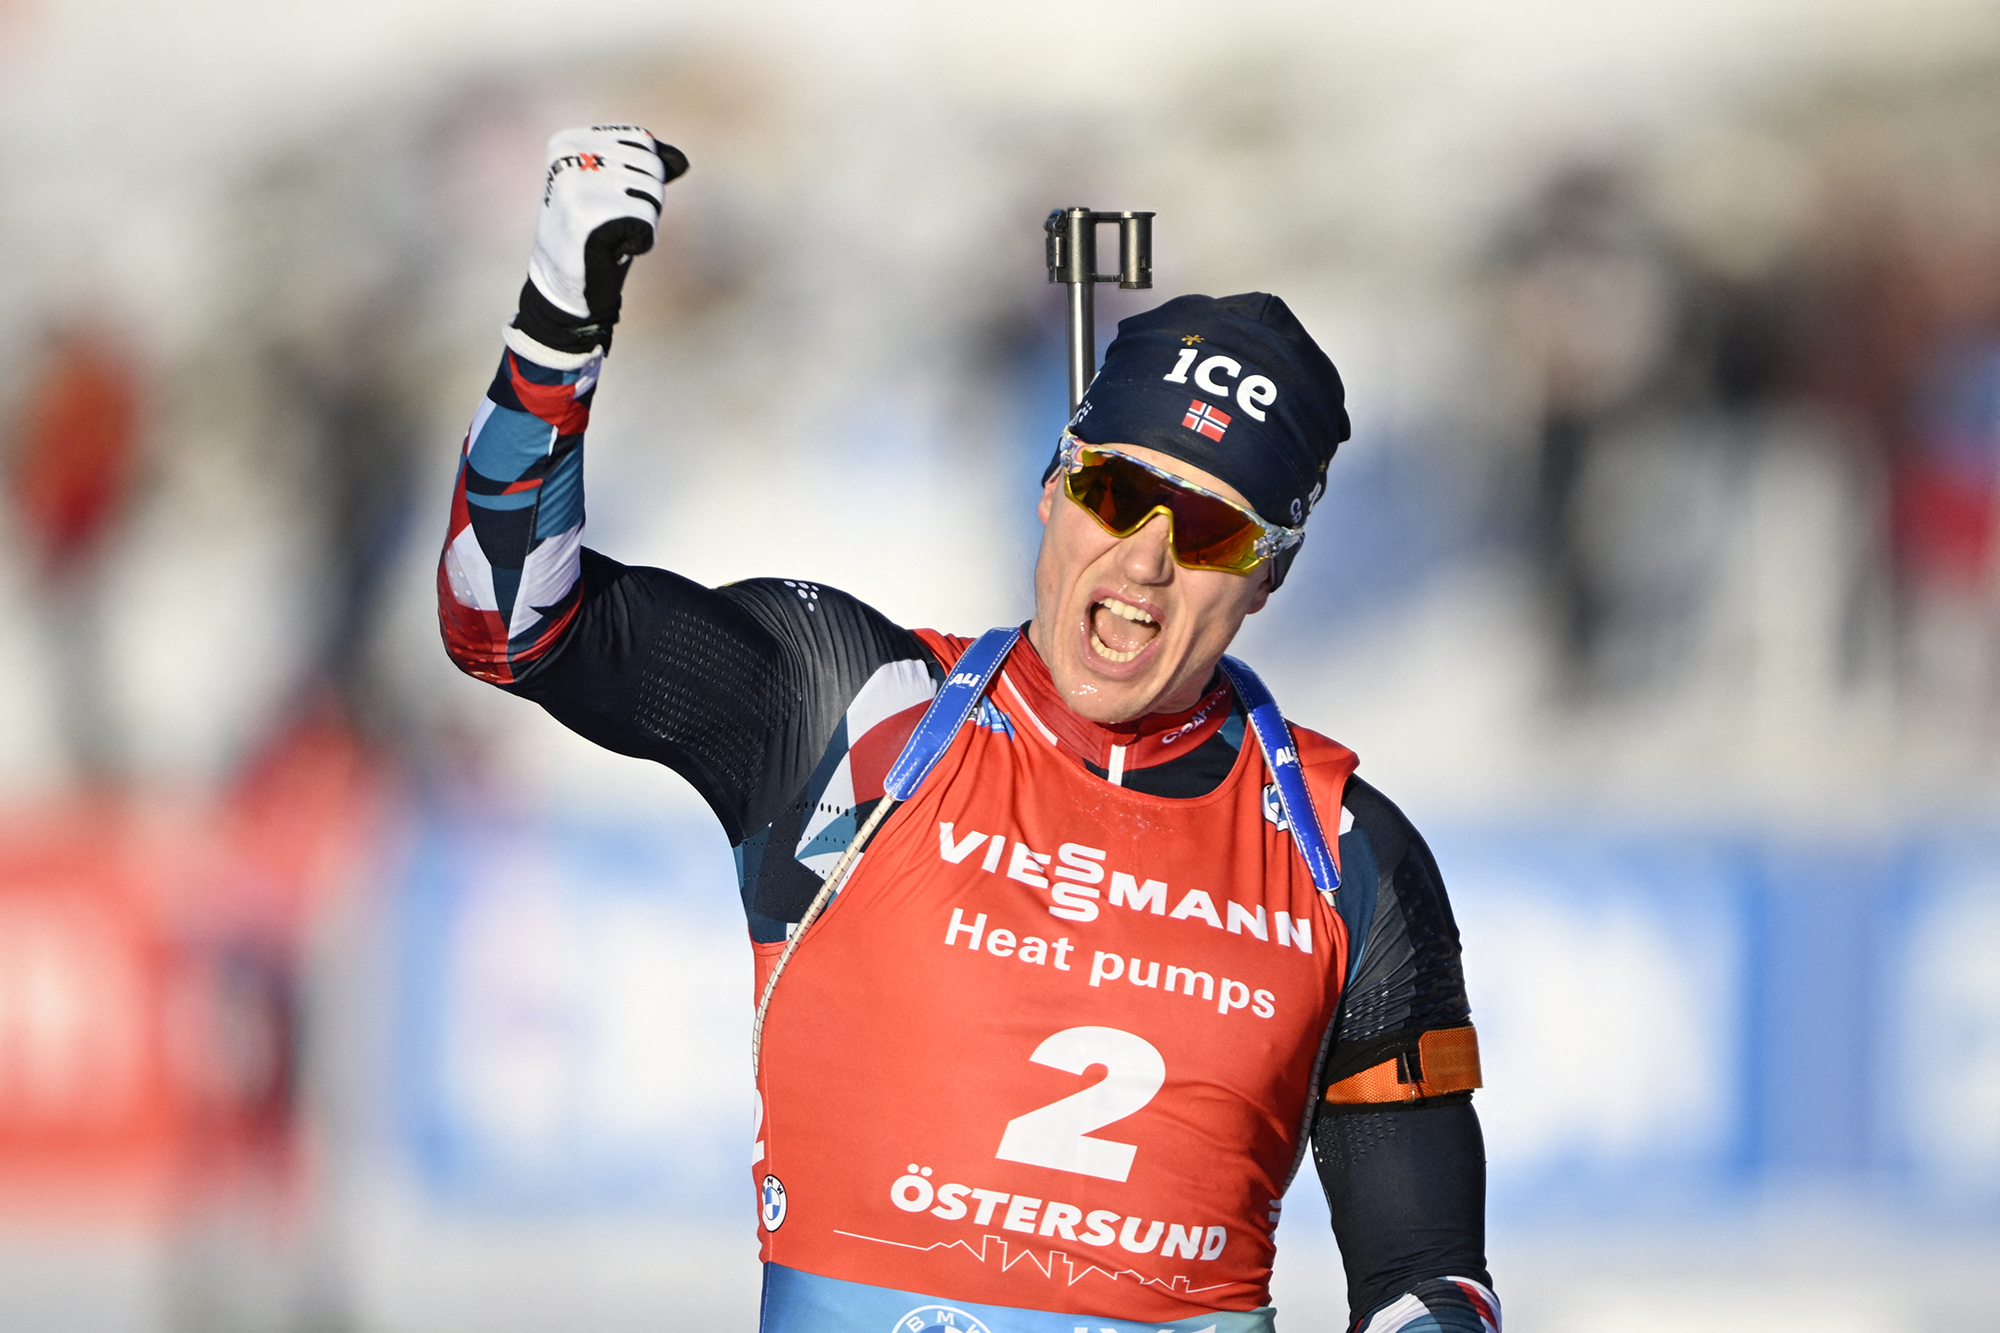 Vetle Christiansen gewinnt Massensprint beim Biathlon-Weltcup (Bild: Anders Wiklund/TT News Agency/AFP)